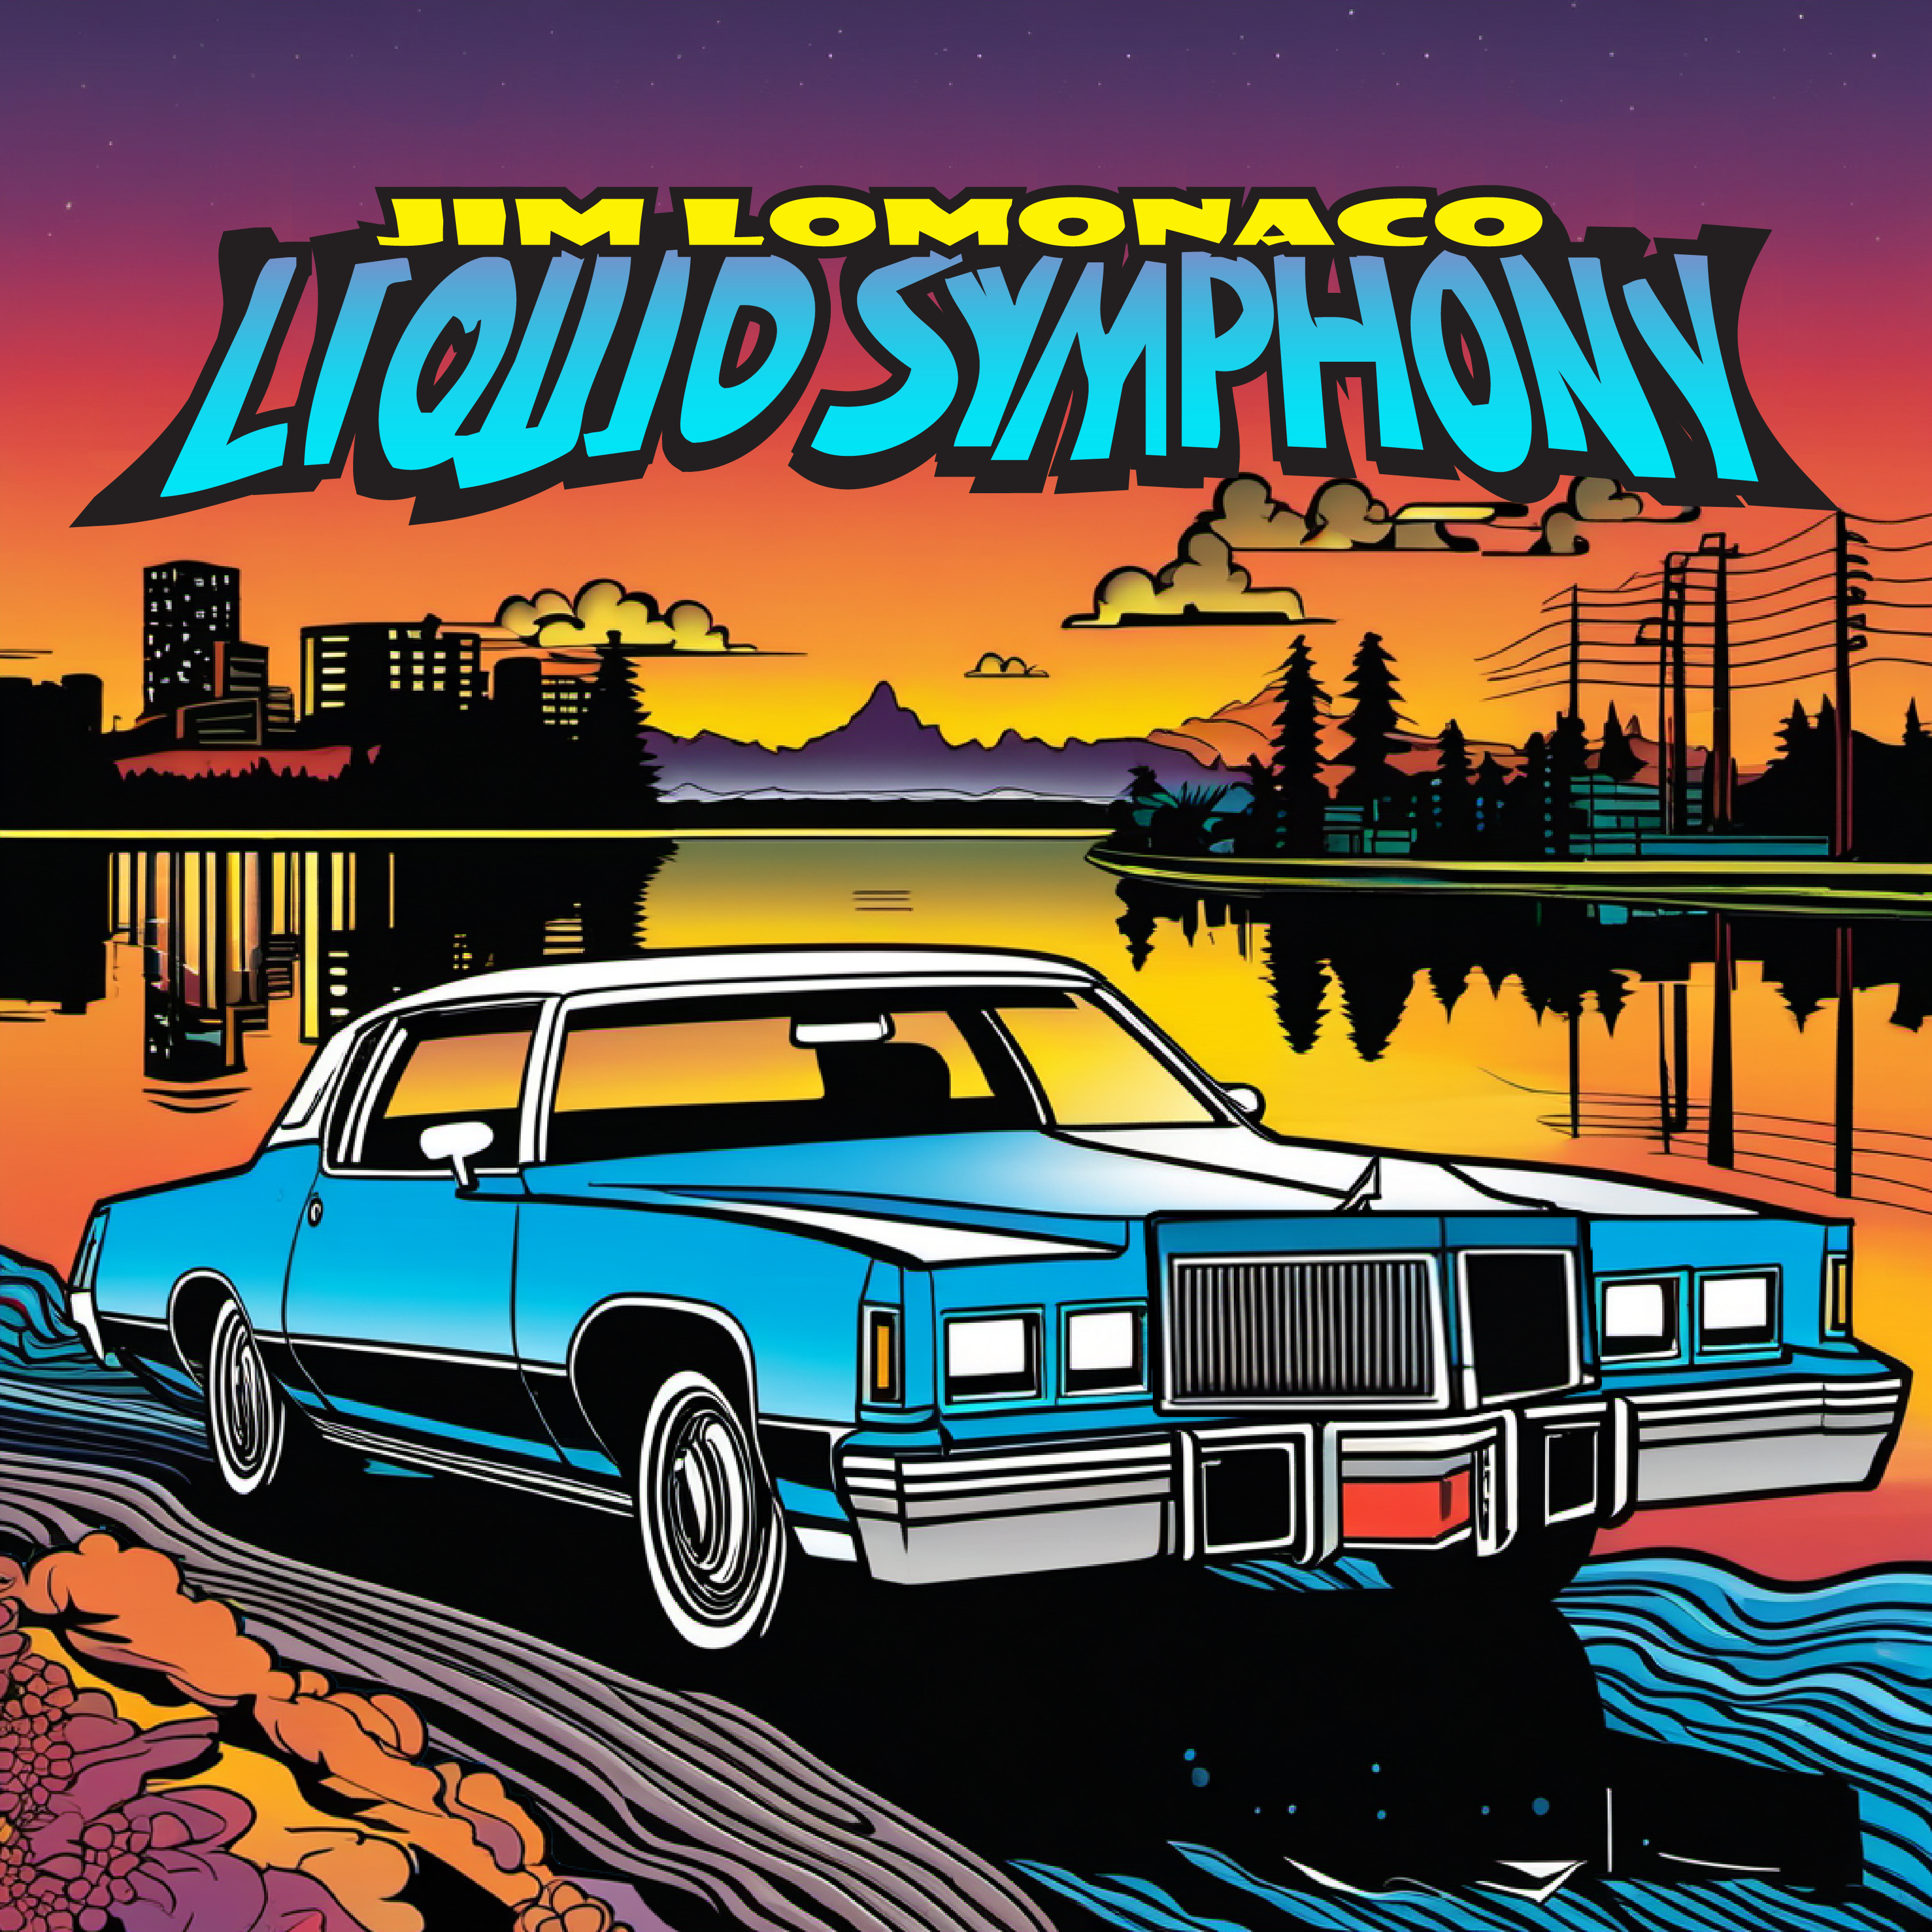 Album cover art for Liquid Symphony